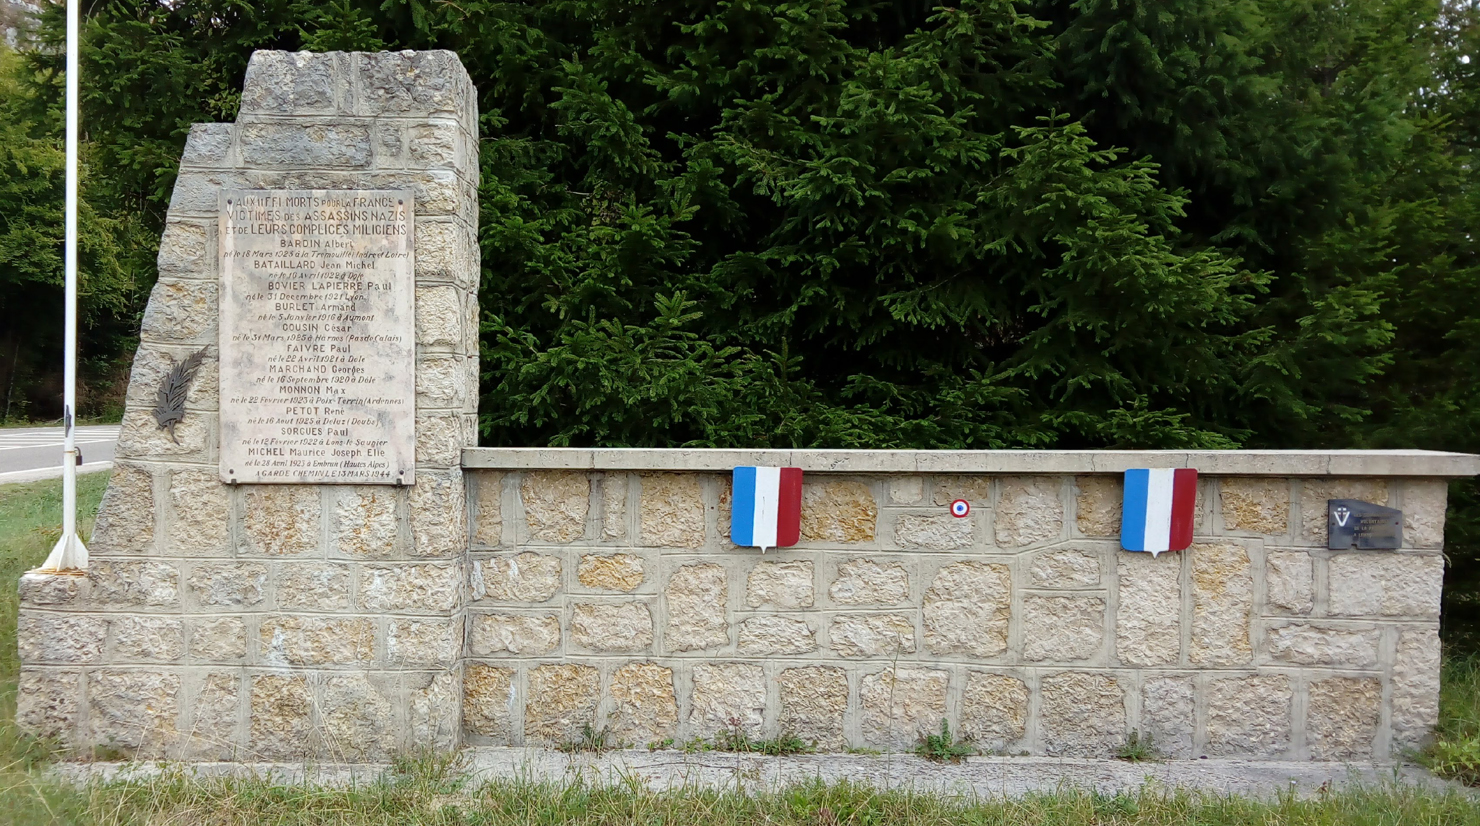 Monument érigé à la mémoire des résistants massacrés le 13 mars 1944 dans une ferme située près de l’ancien pont de la Pyle (sur la rivière d’Ain) où s’était réfugié un groupe maquis.